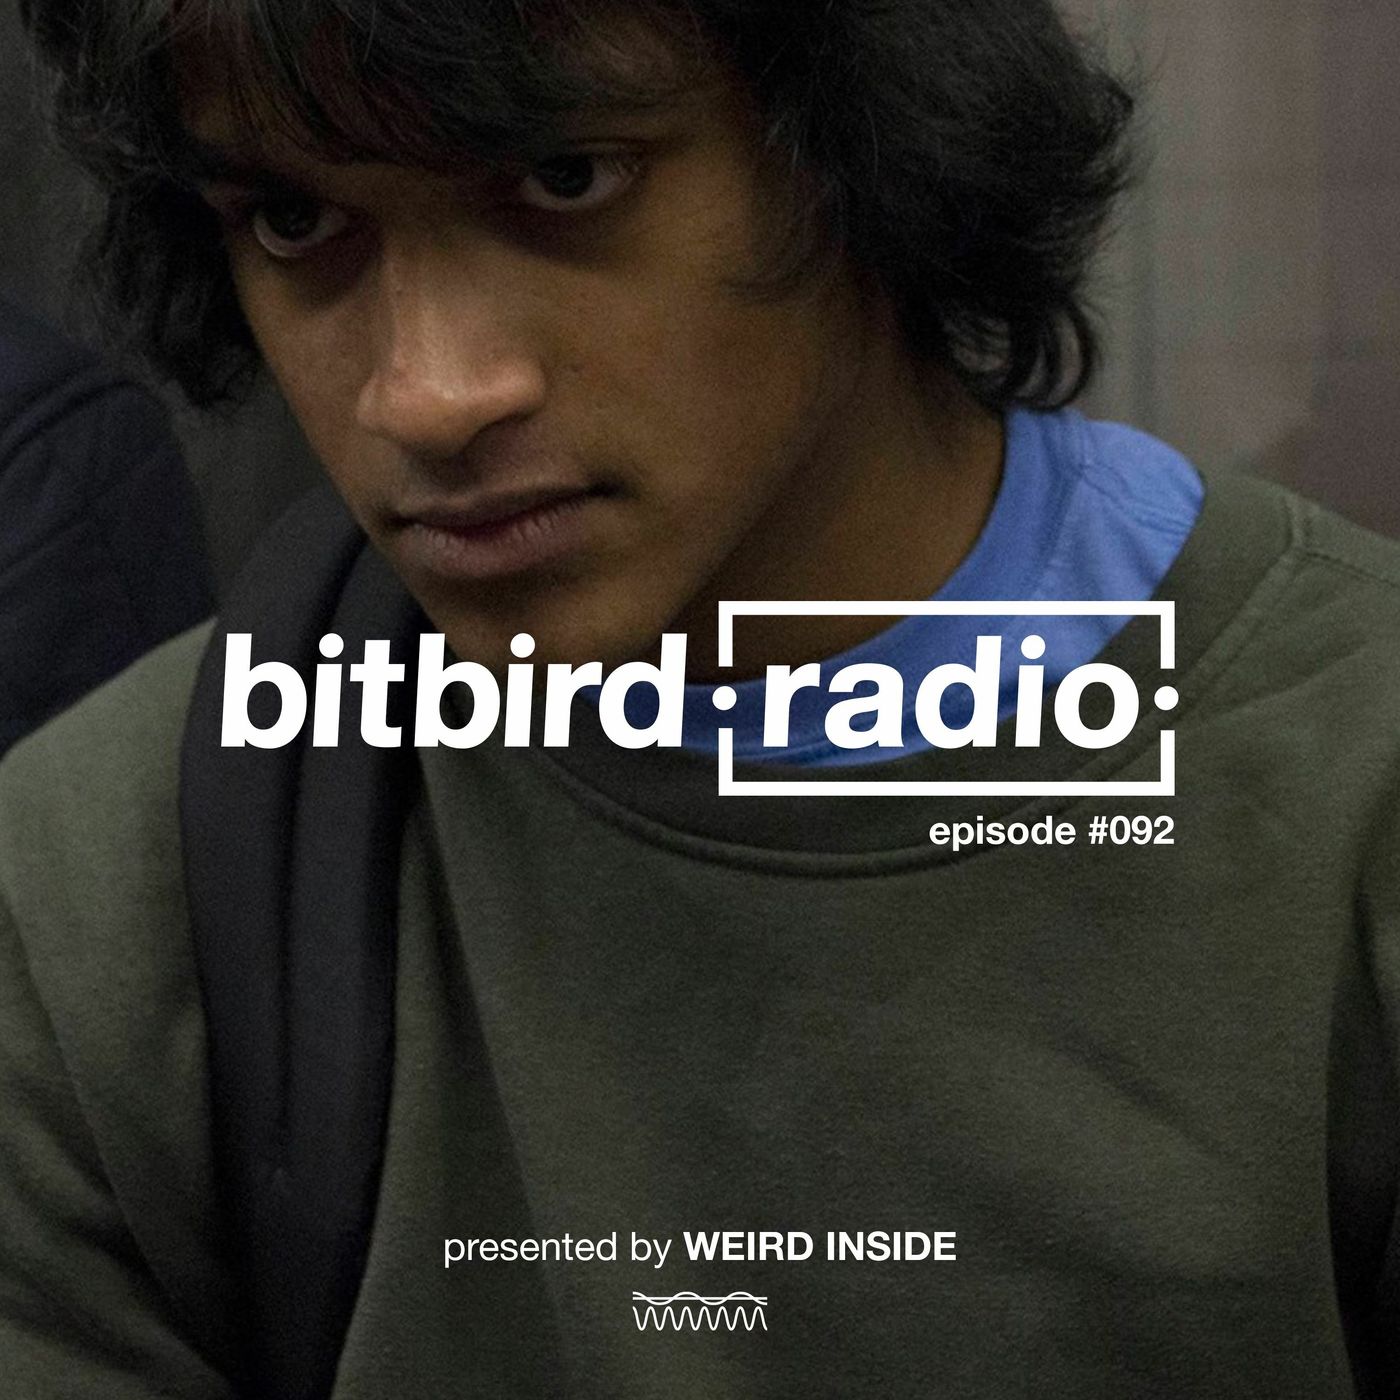 weird inside Presents: bitbird radio #092